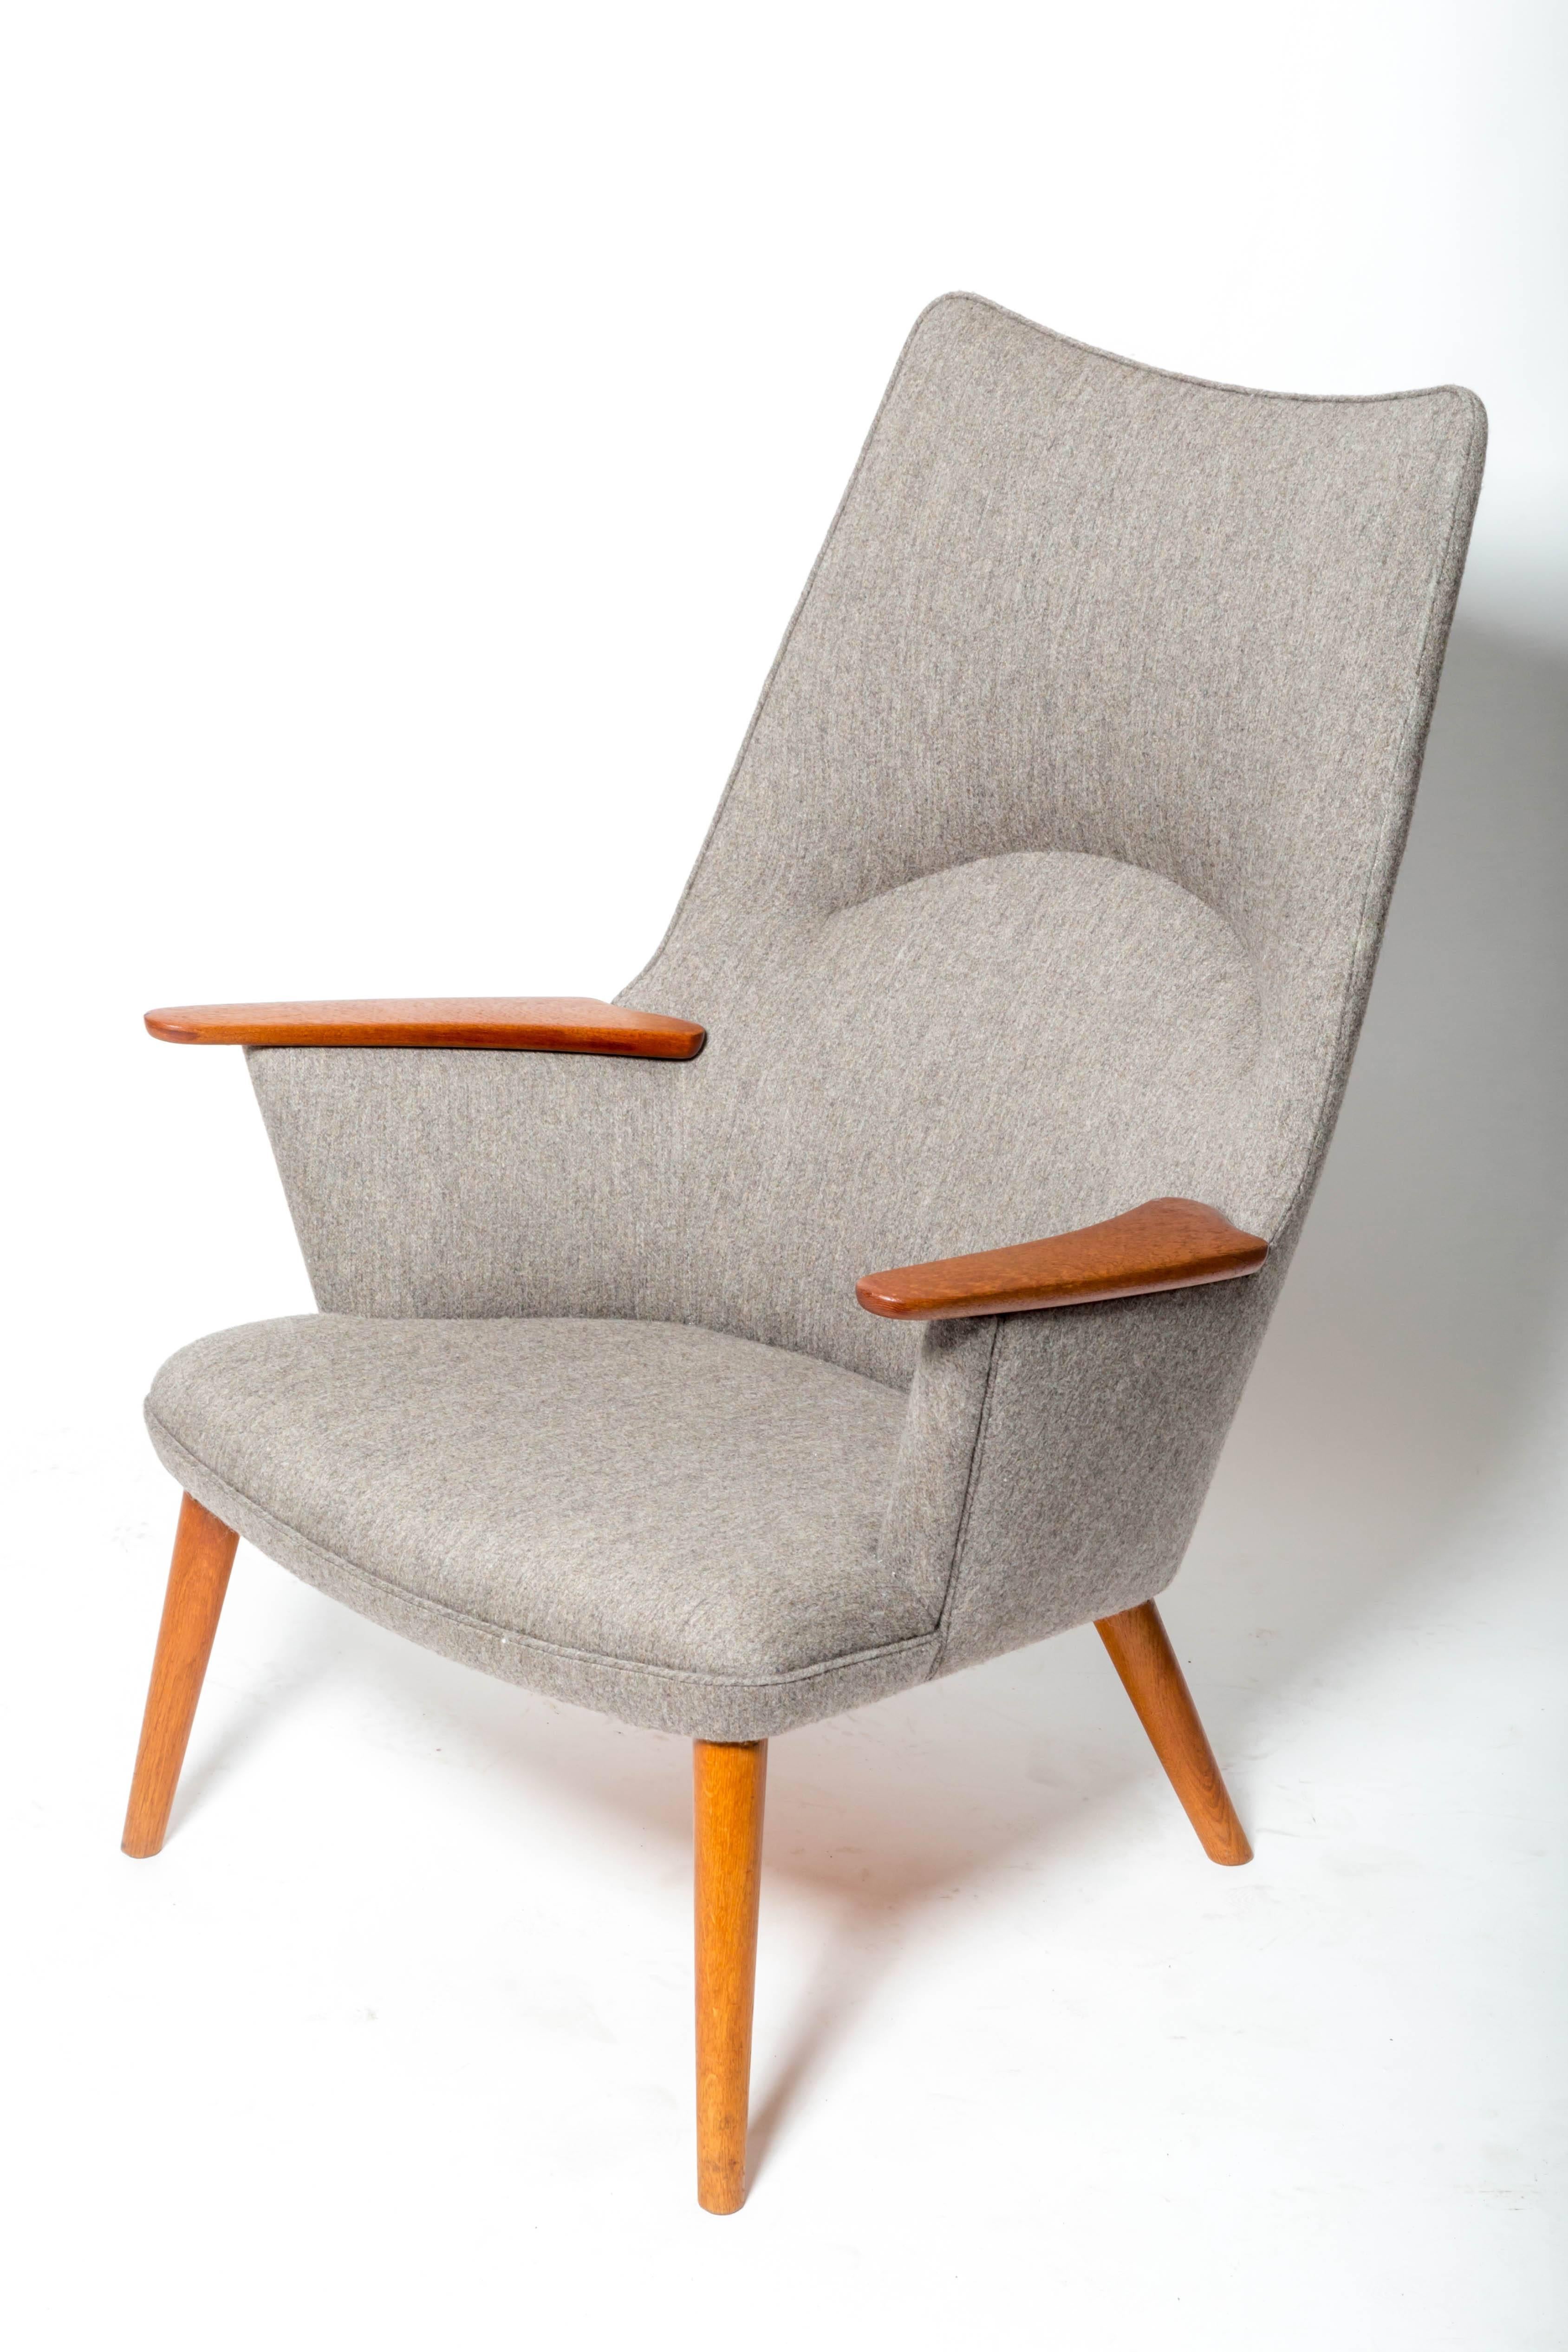 Hans J. Wegner AP-27 Lounge Chairs für A.P. Stolen:: Dänemark:: 1954

Sie sind mit einem grauen Wollstoff gepolstert. 2 sind verfügbar 


 